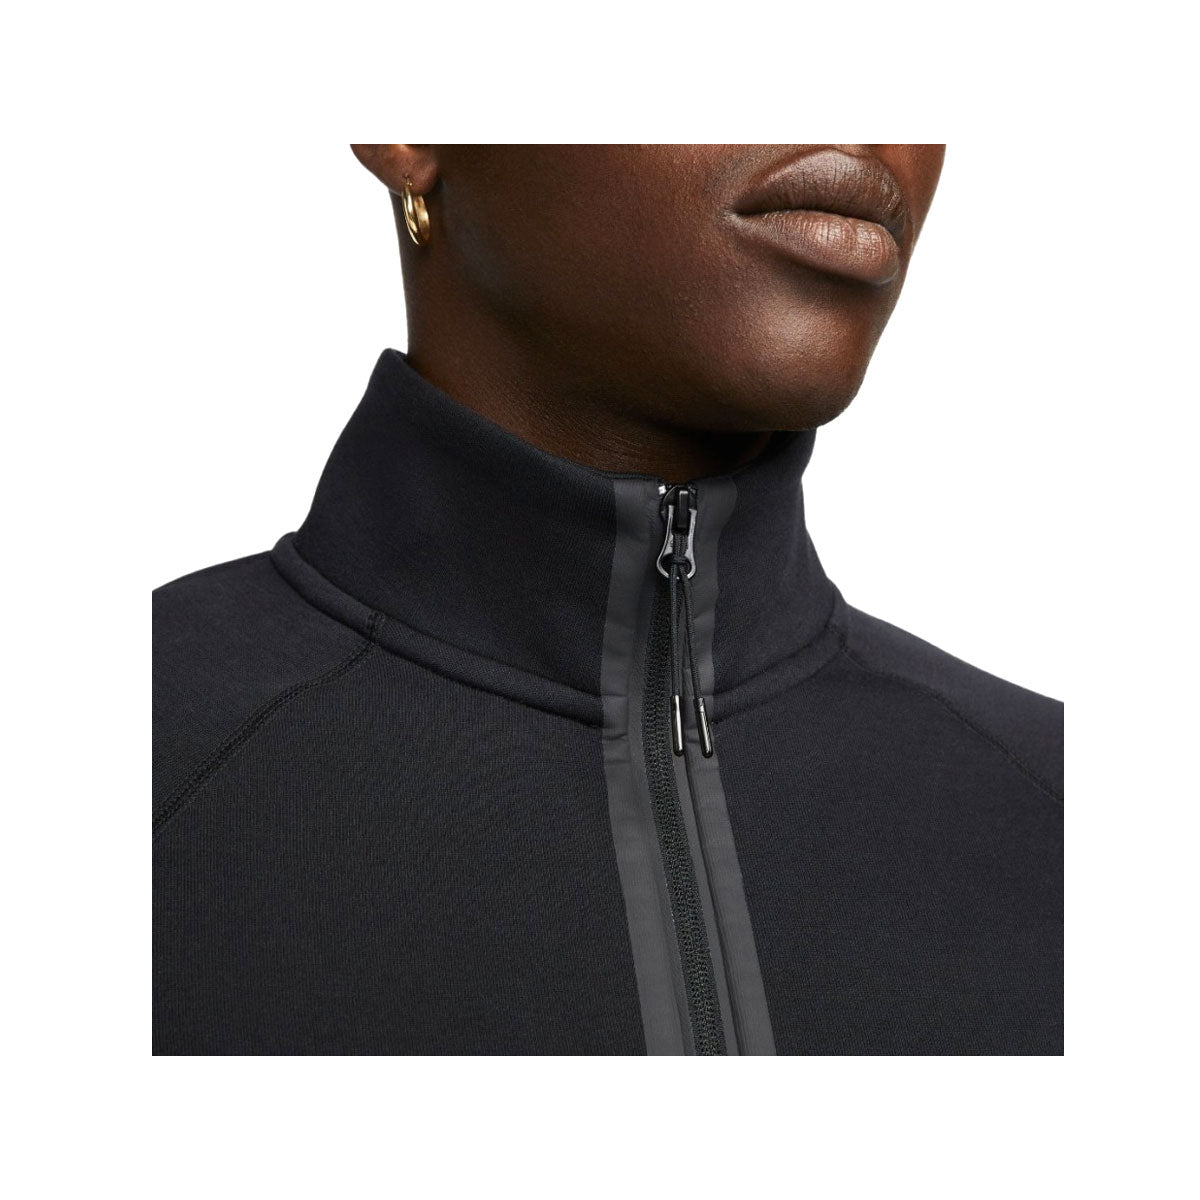 Nike Men's Sportswear Tech Fleece 1/2-Zip Sweatshirt